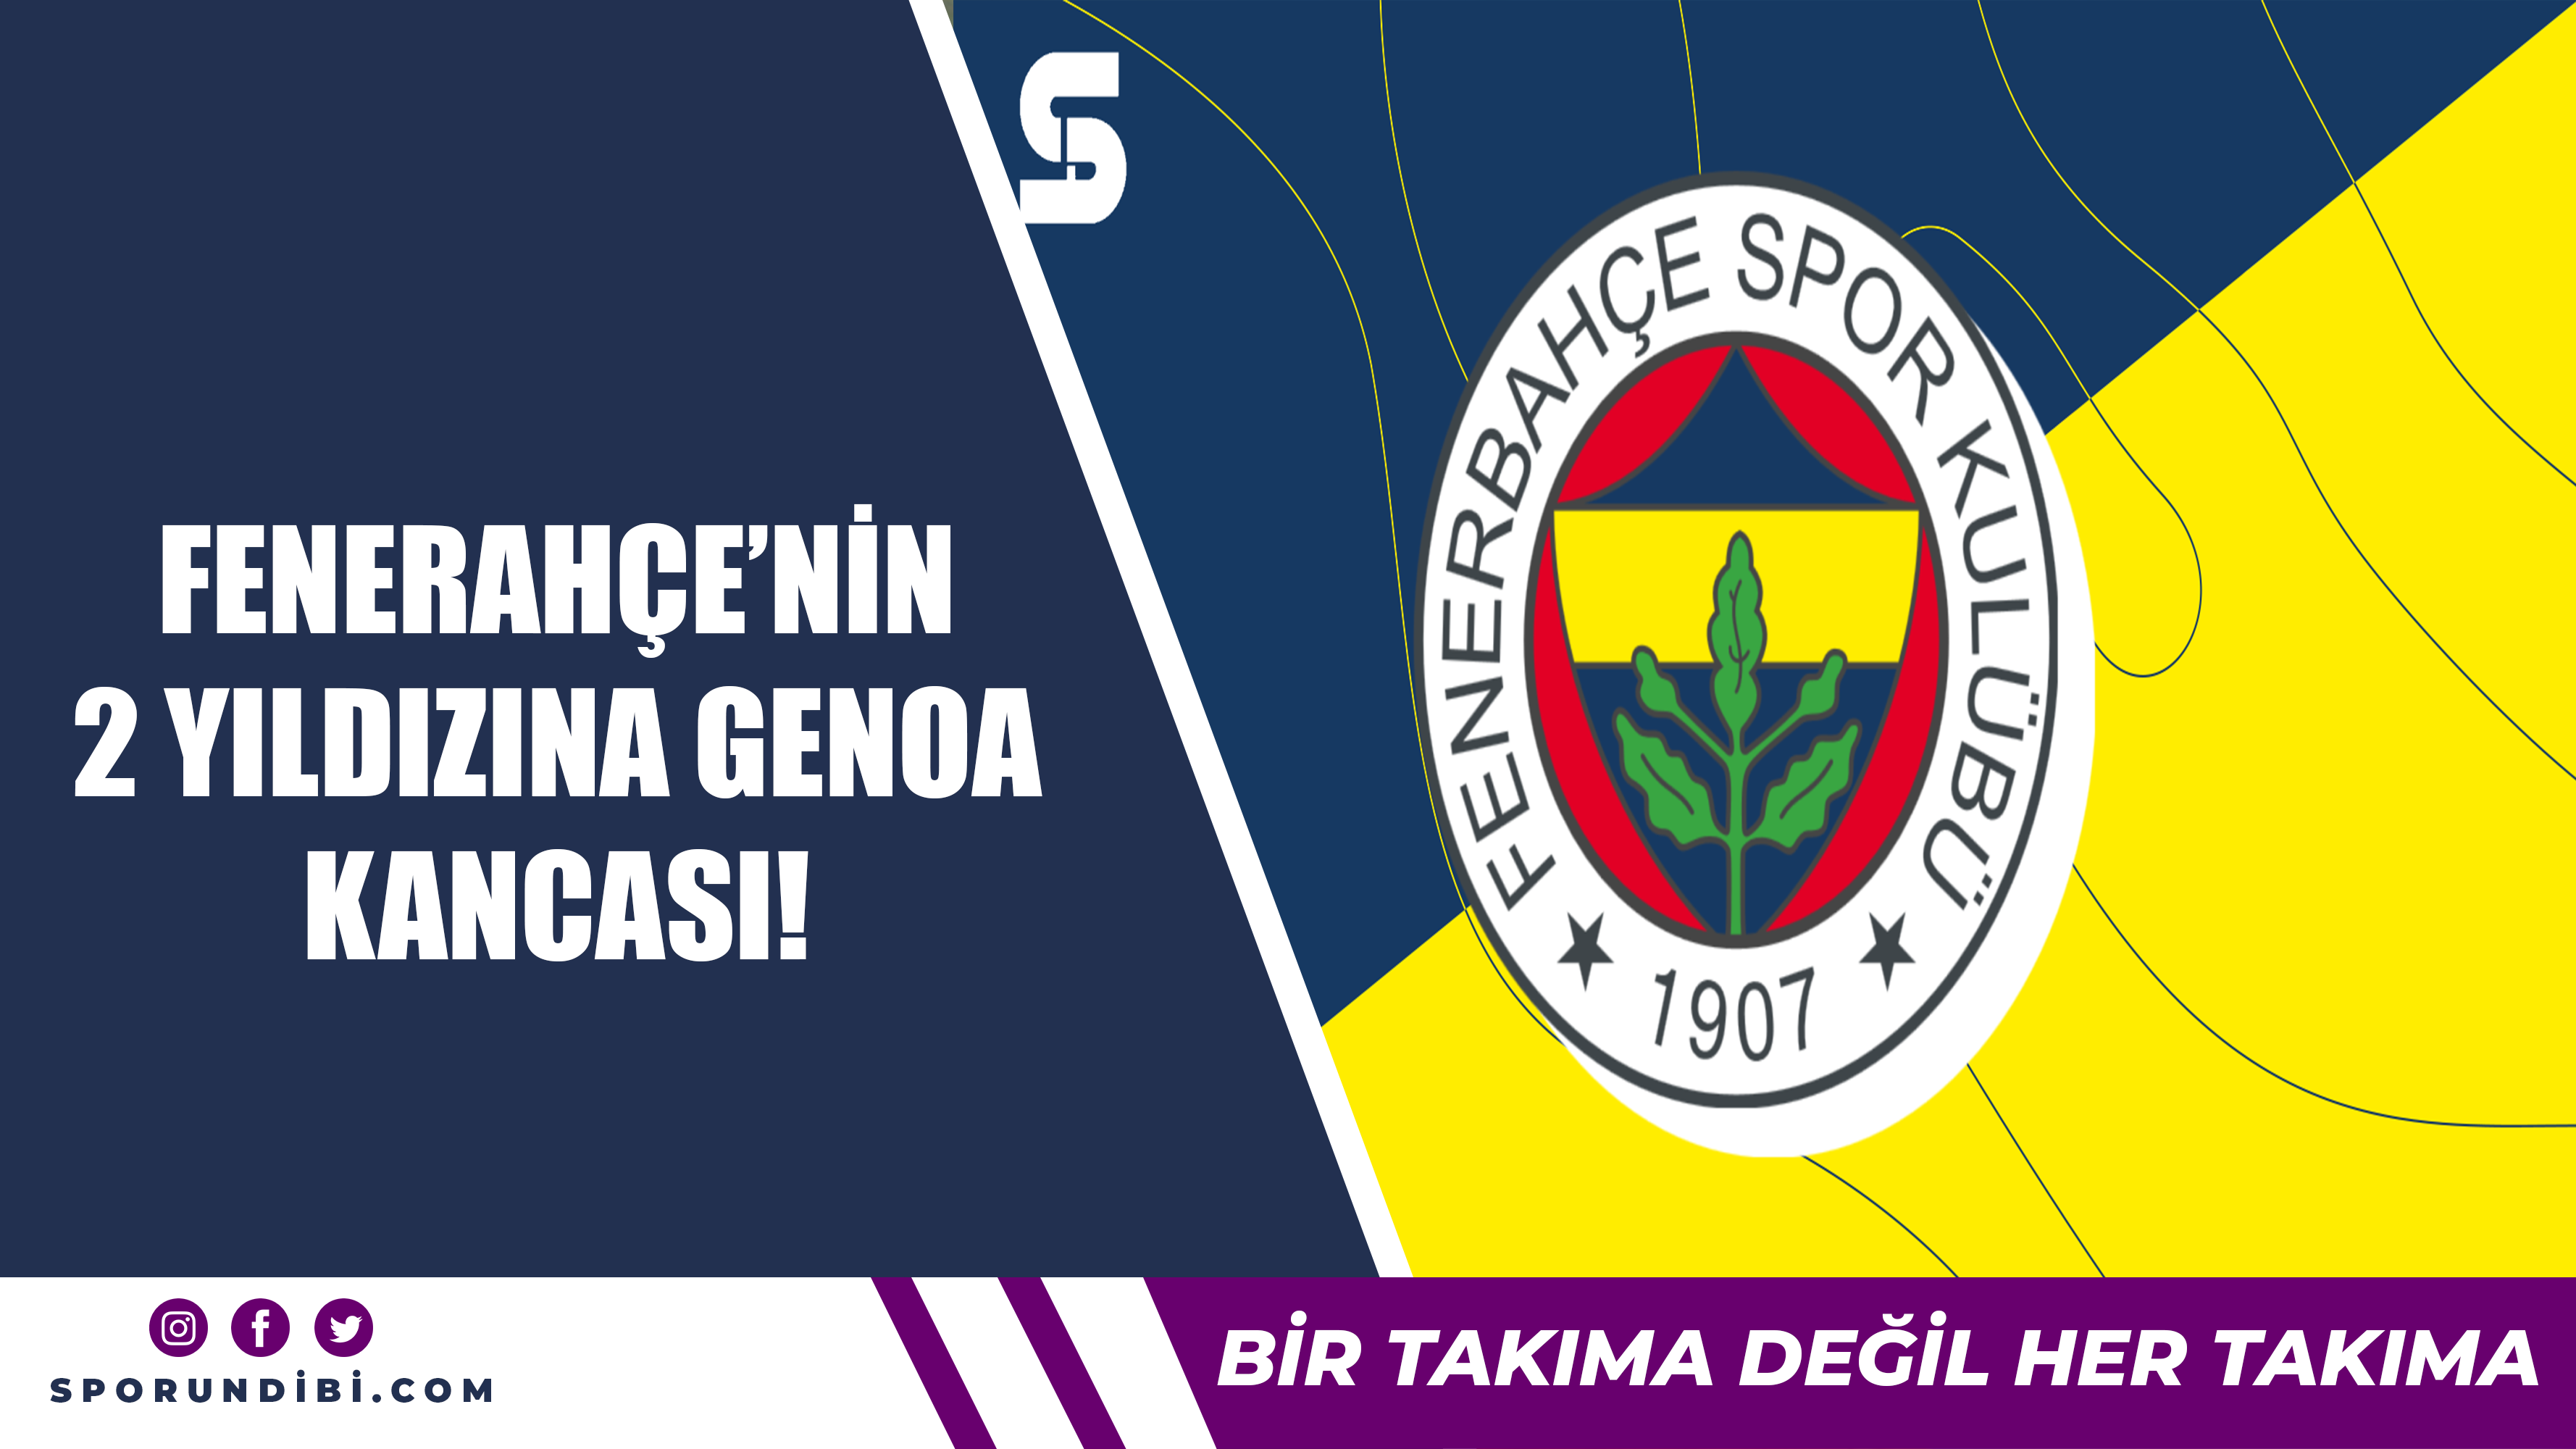 Fenerbahçe'nin 2 yıldızına Genoa kancası!